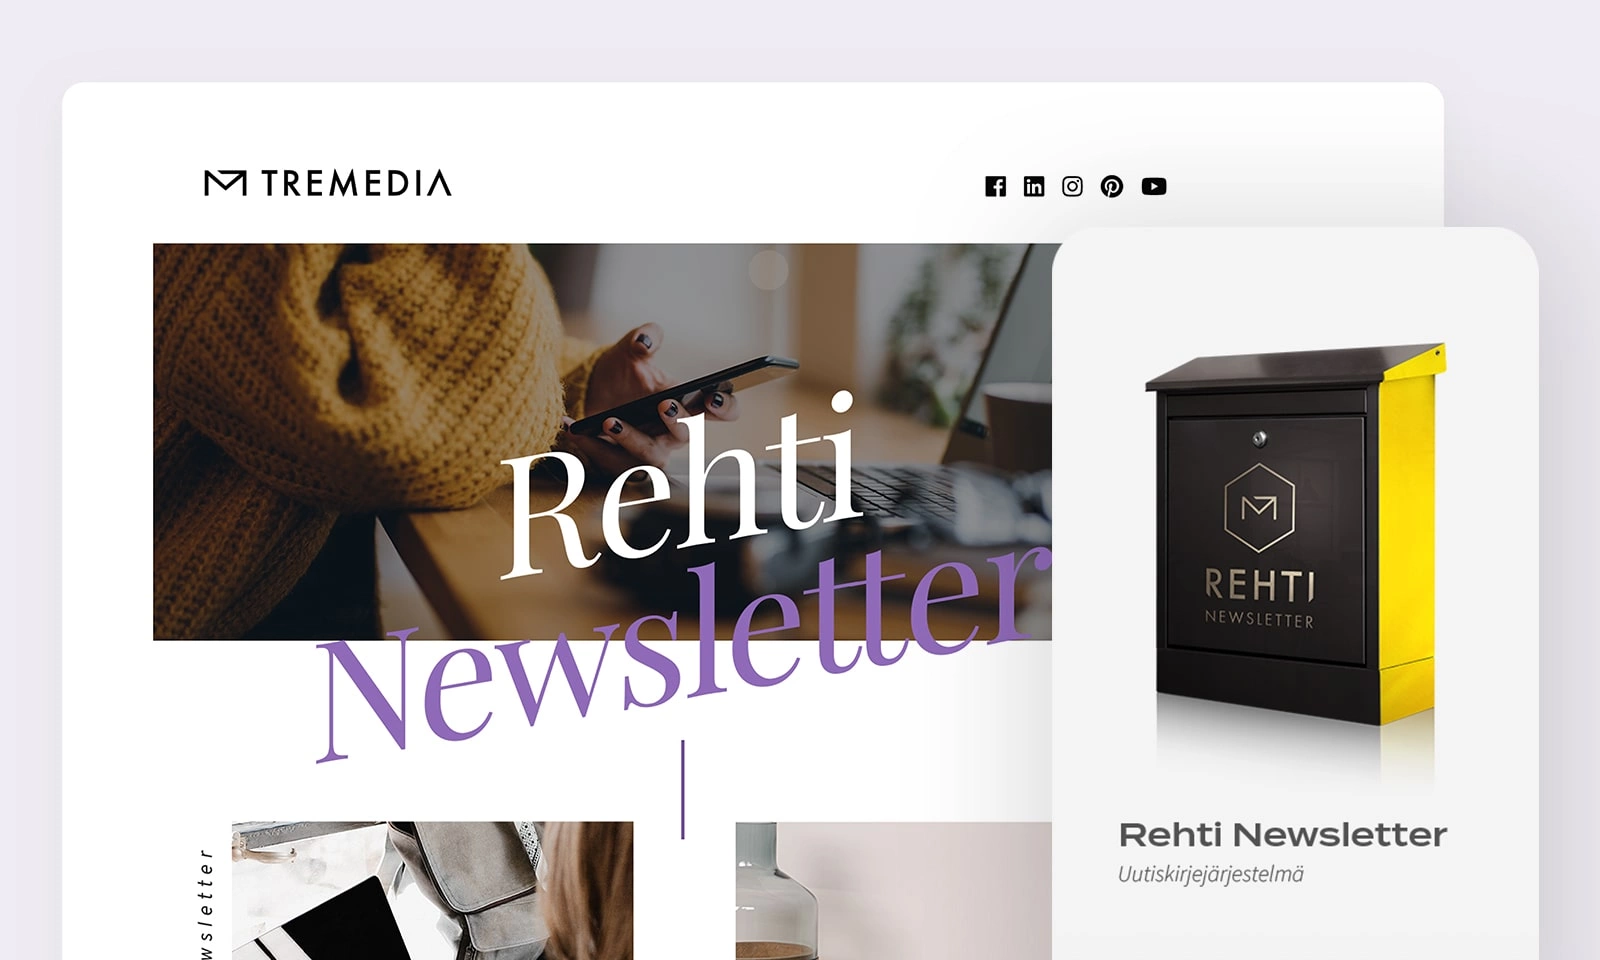 Rehti Newsletter -uutiskirjejärjestelmän tuotekuva ja moderni uutiskirjeen kuvitus sekä otsikko.